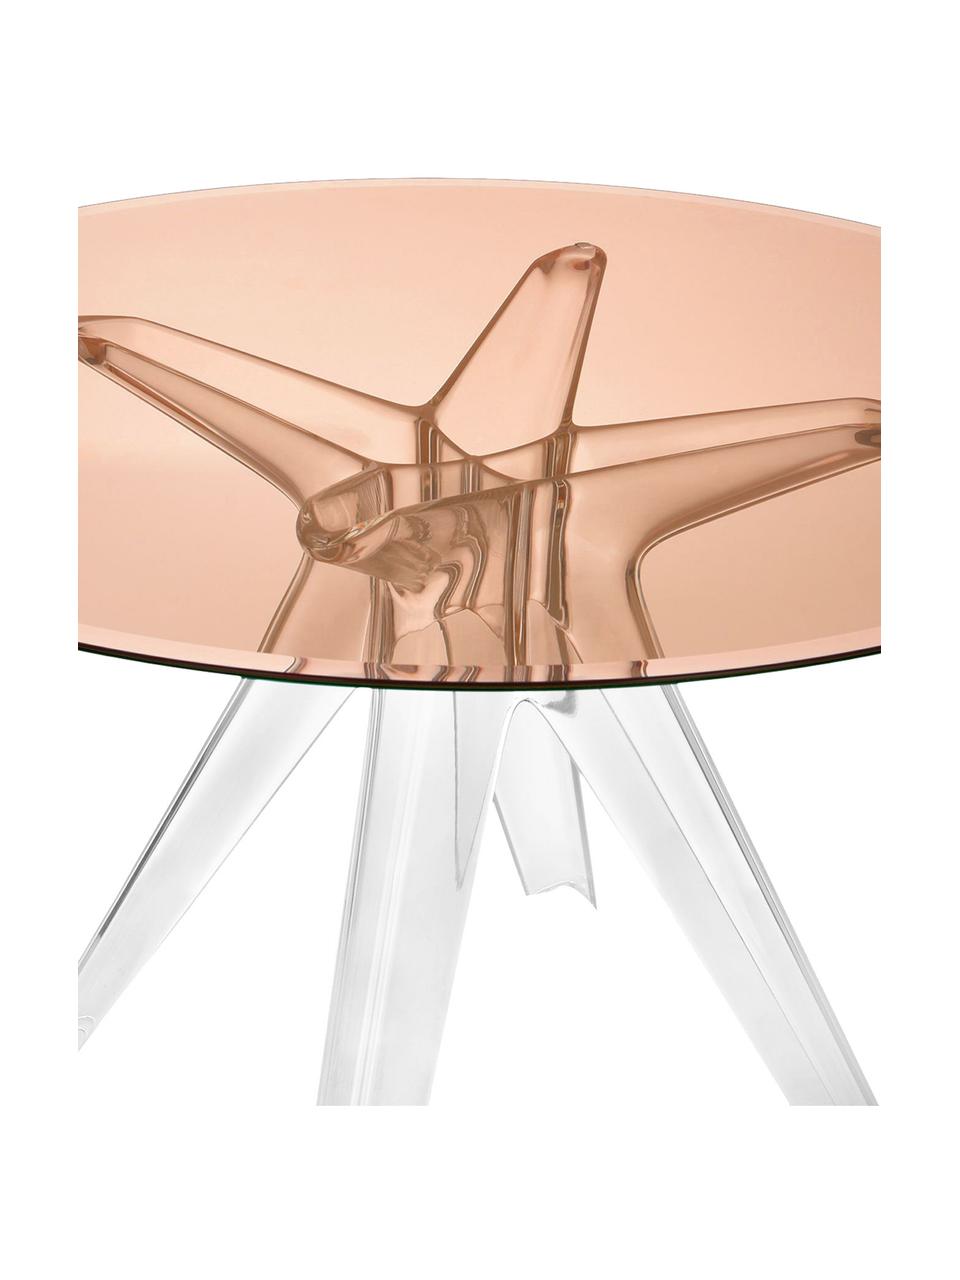 Runder Esstisch Sir Gio, Ø 120 cm, Tischplatte: Verbundglas, Gestell: Kunststoff, Rosa, Transparent, Ø 120 x H 72 cm